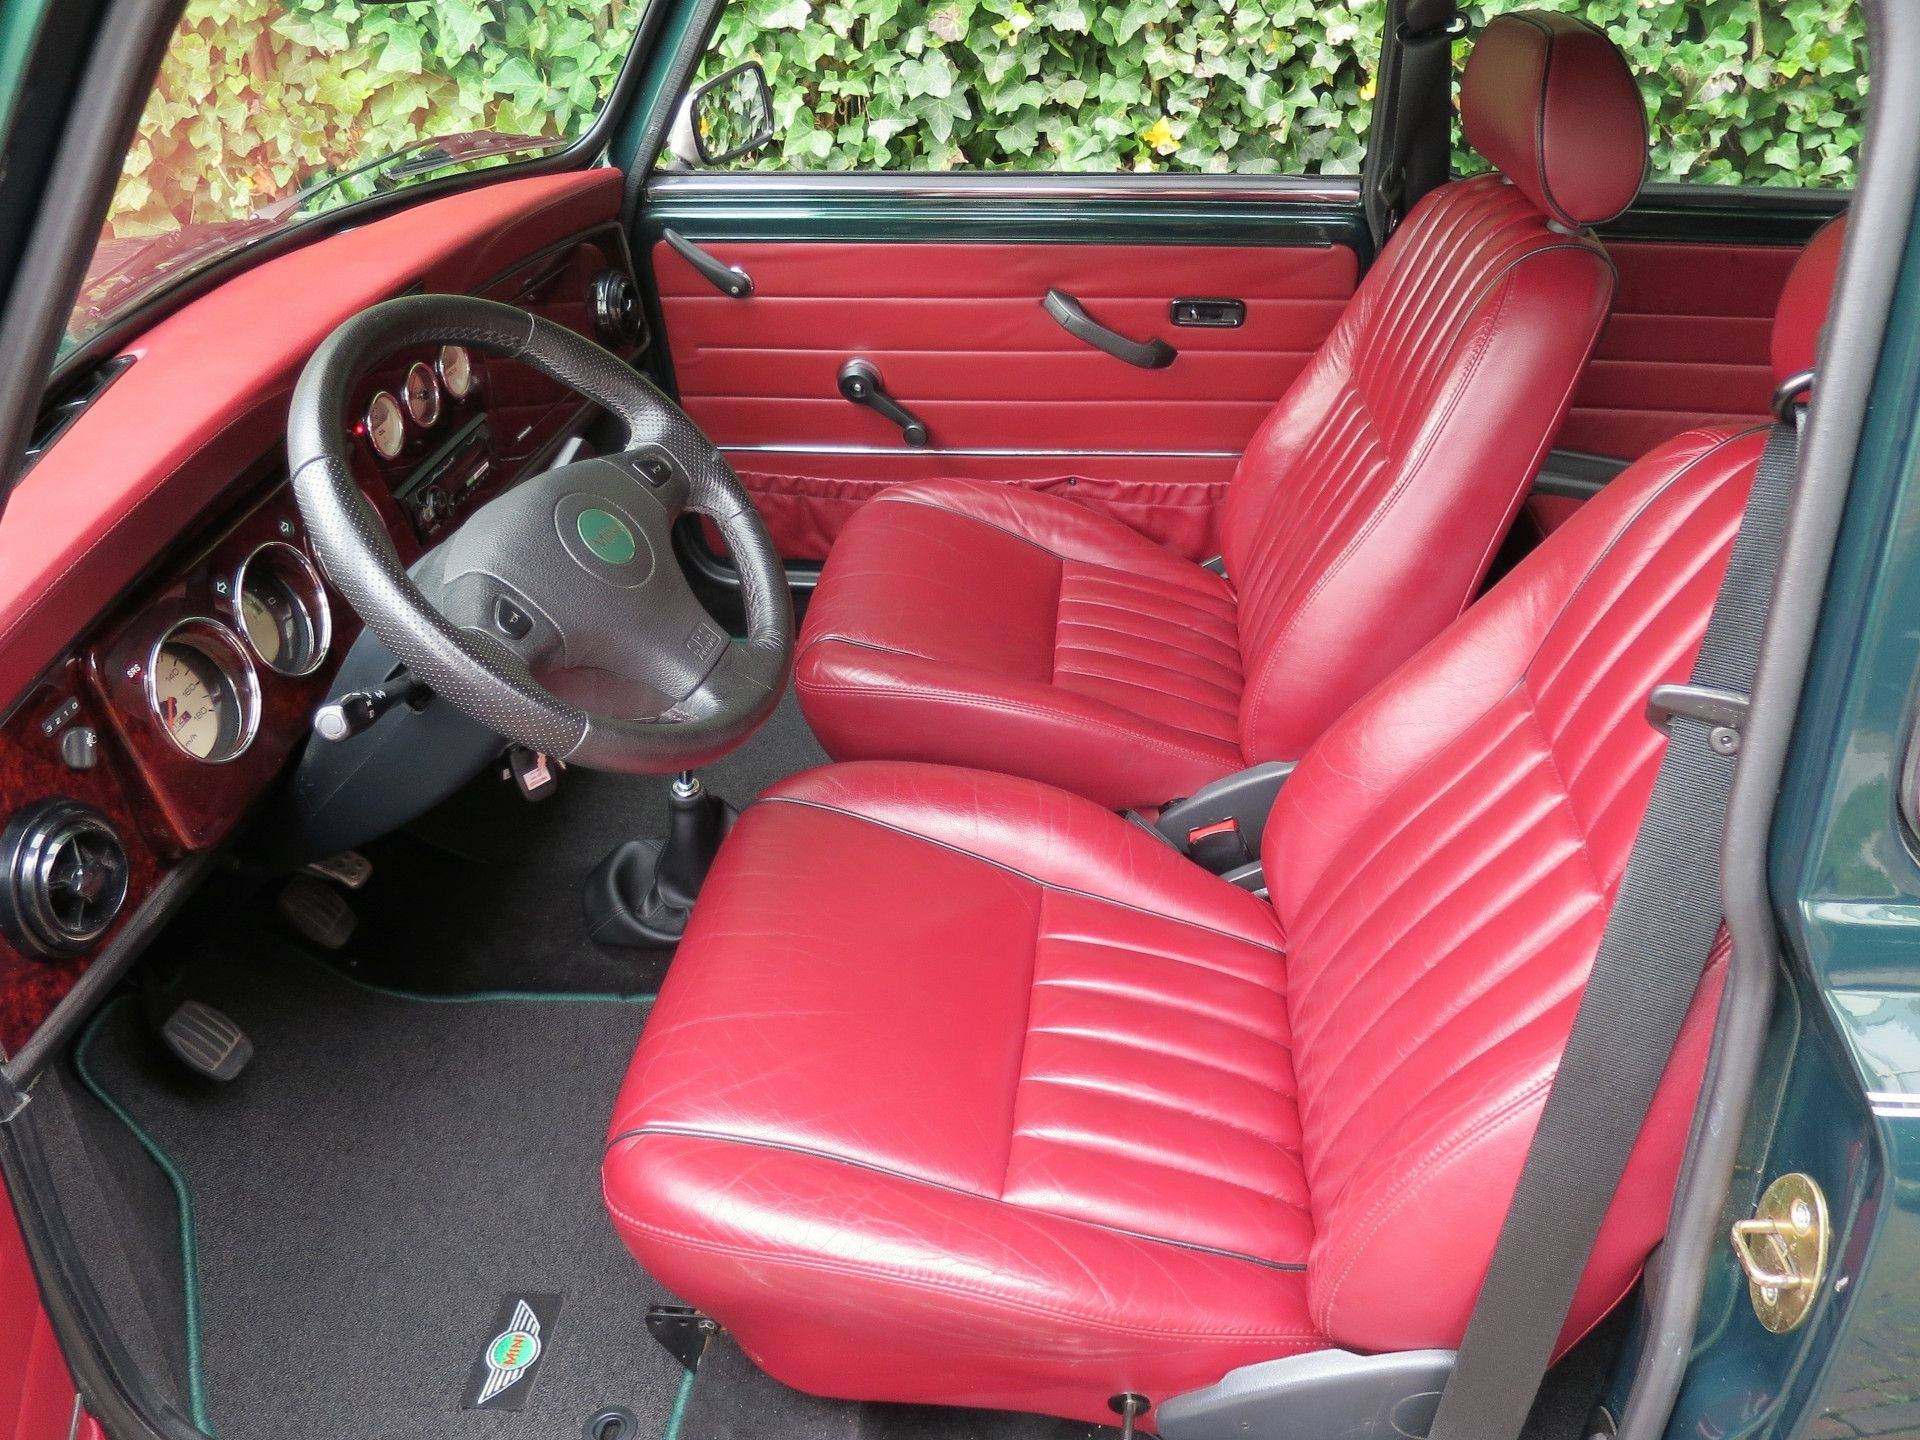 MINI Cooper Sport 1.3 MPI met leder interieur, houten dash en 13" velgen - 10/50